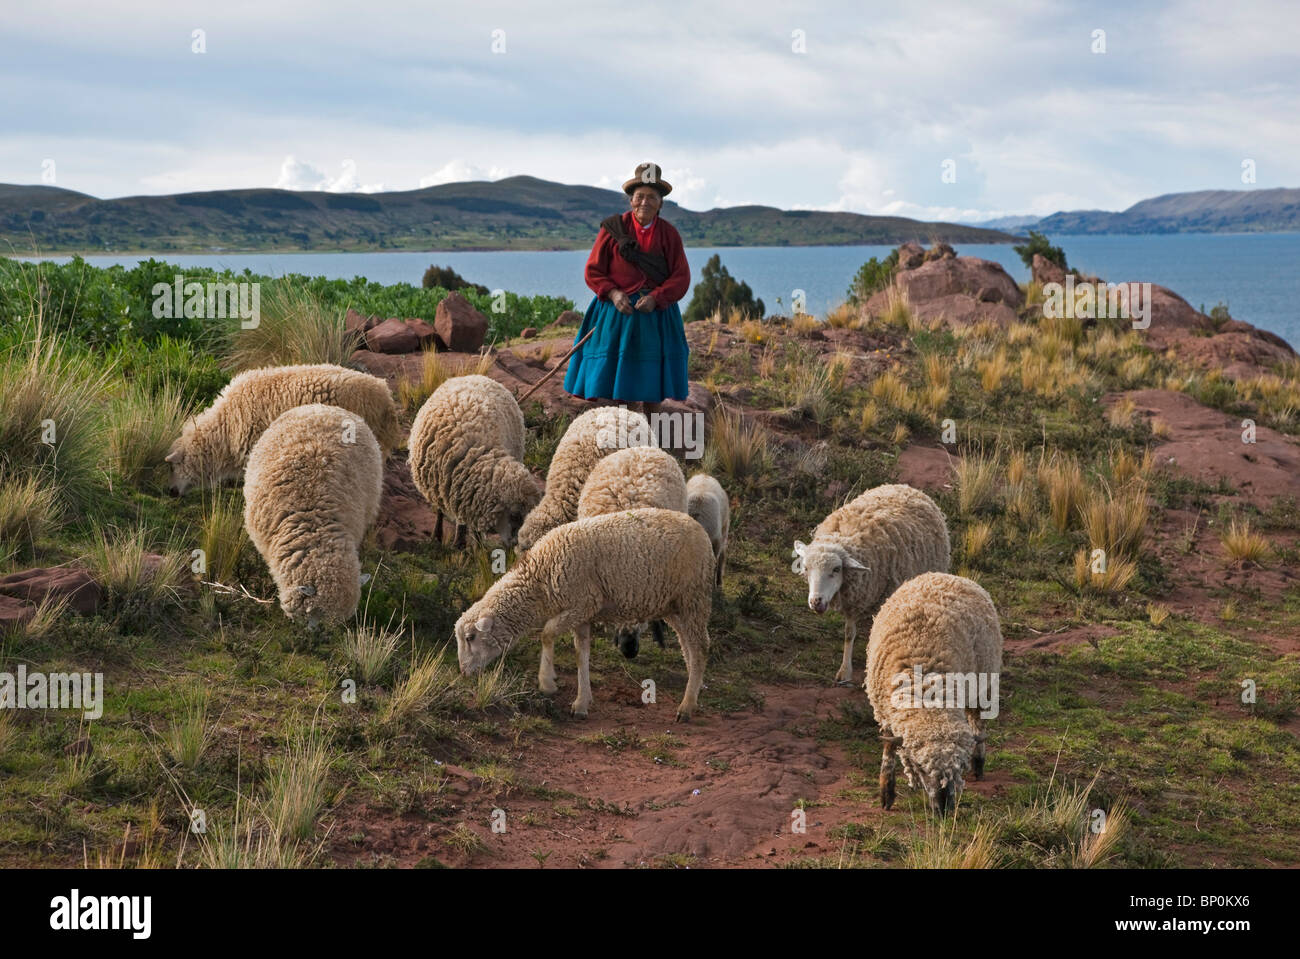 Le Pérou, une vieille femme indienne autochtone ses troupeaux de moutons avec de maigres pâturages près des rives du lac Titicaca. Banque D'Images